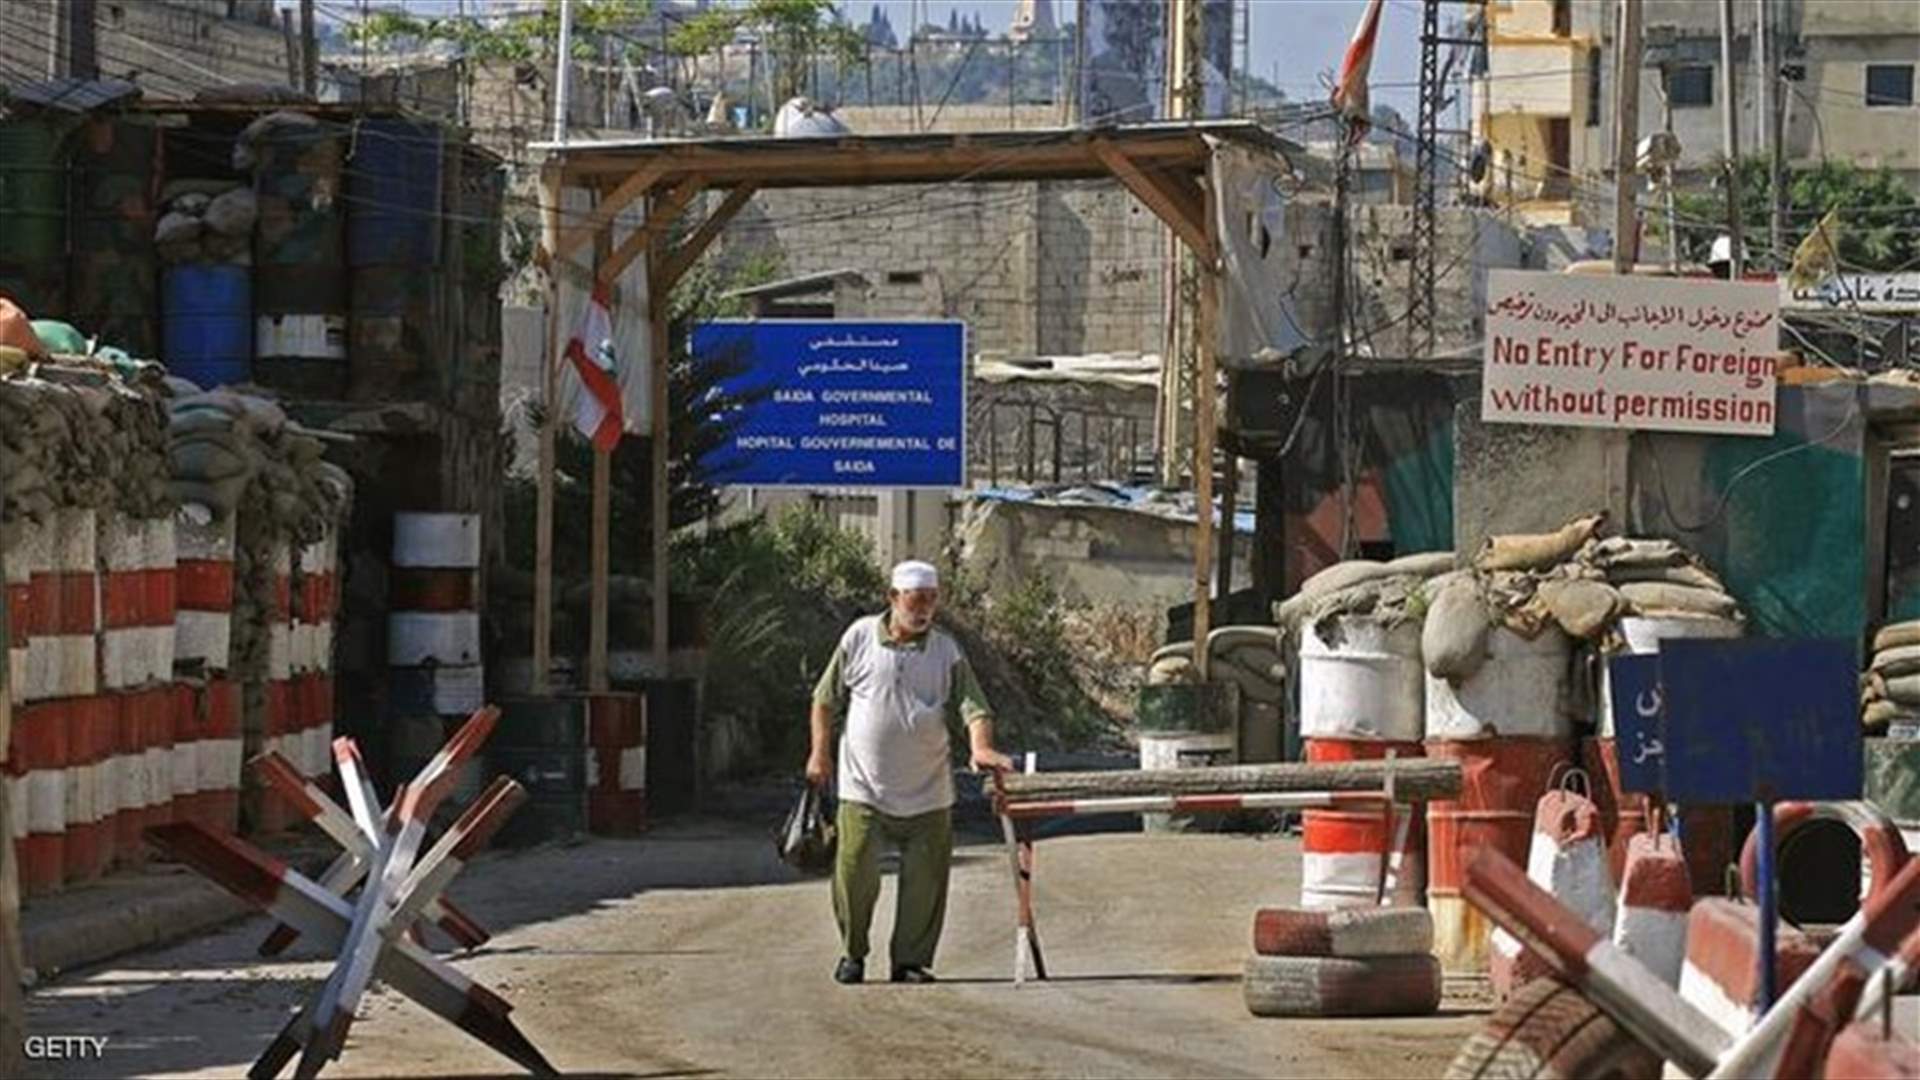 القيادة السياسية الفلسطينية في صيدا: إشكال عين الحلوة مدان وننسق لتسليم مسببيه للقضاء اللبناني